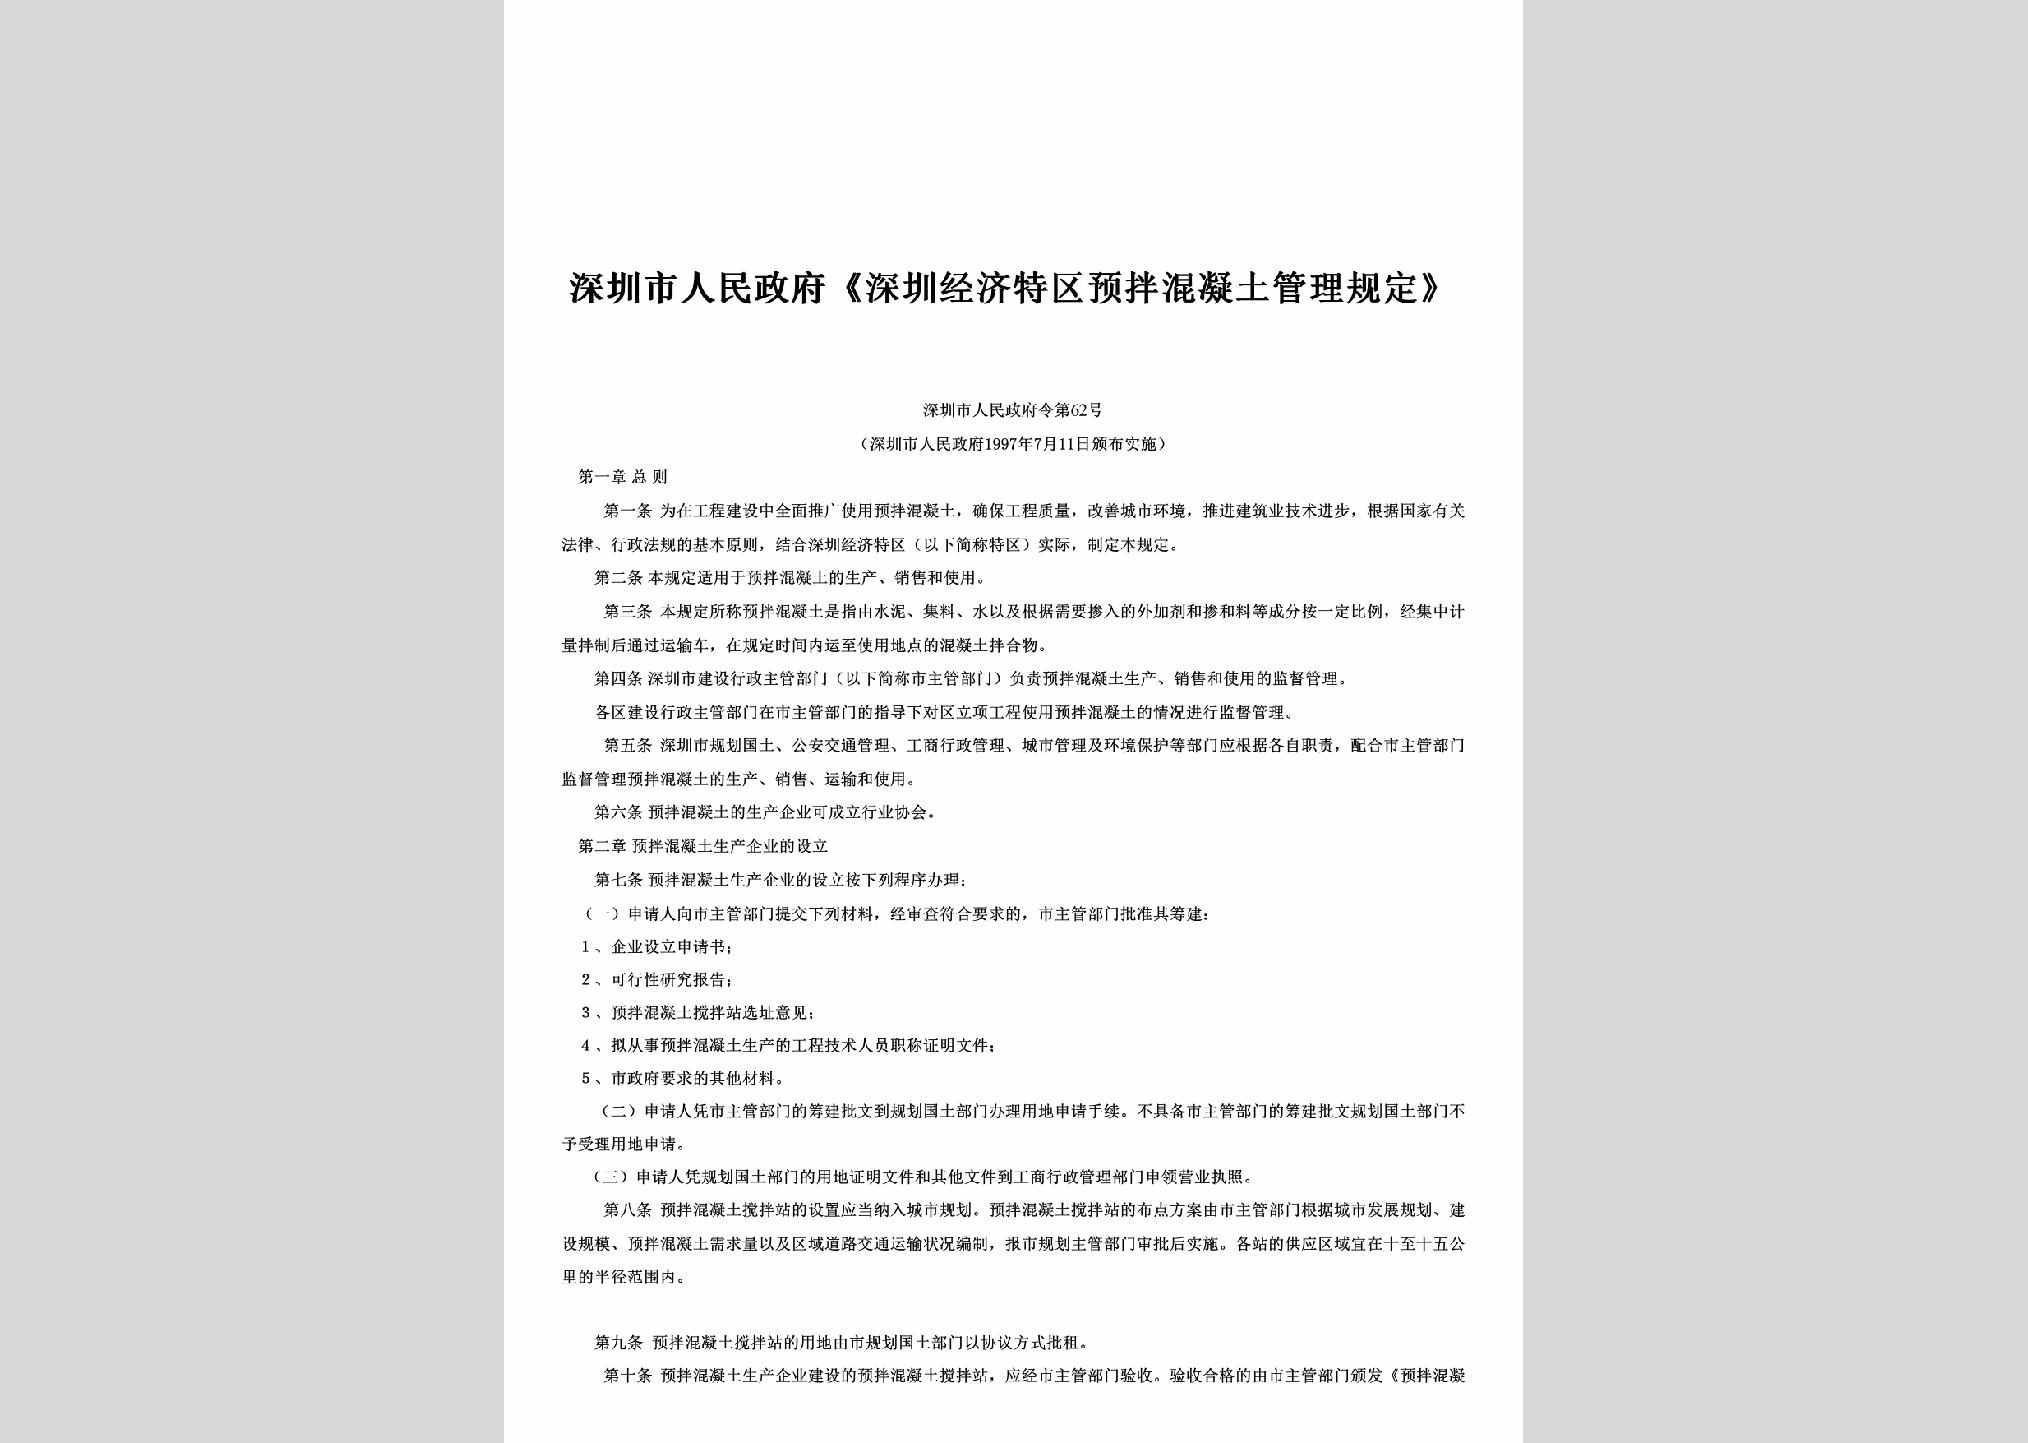 深圳市人民政府令第62号：《深圳经济特区预拌混凝土管理规定》